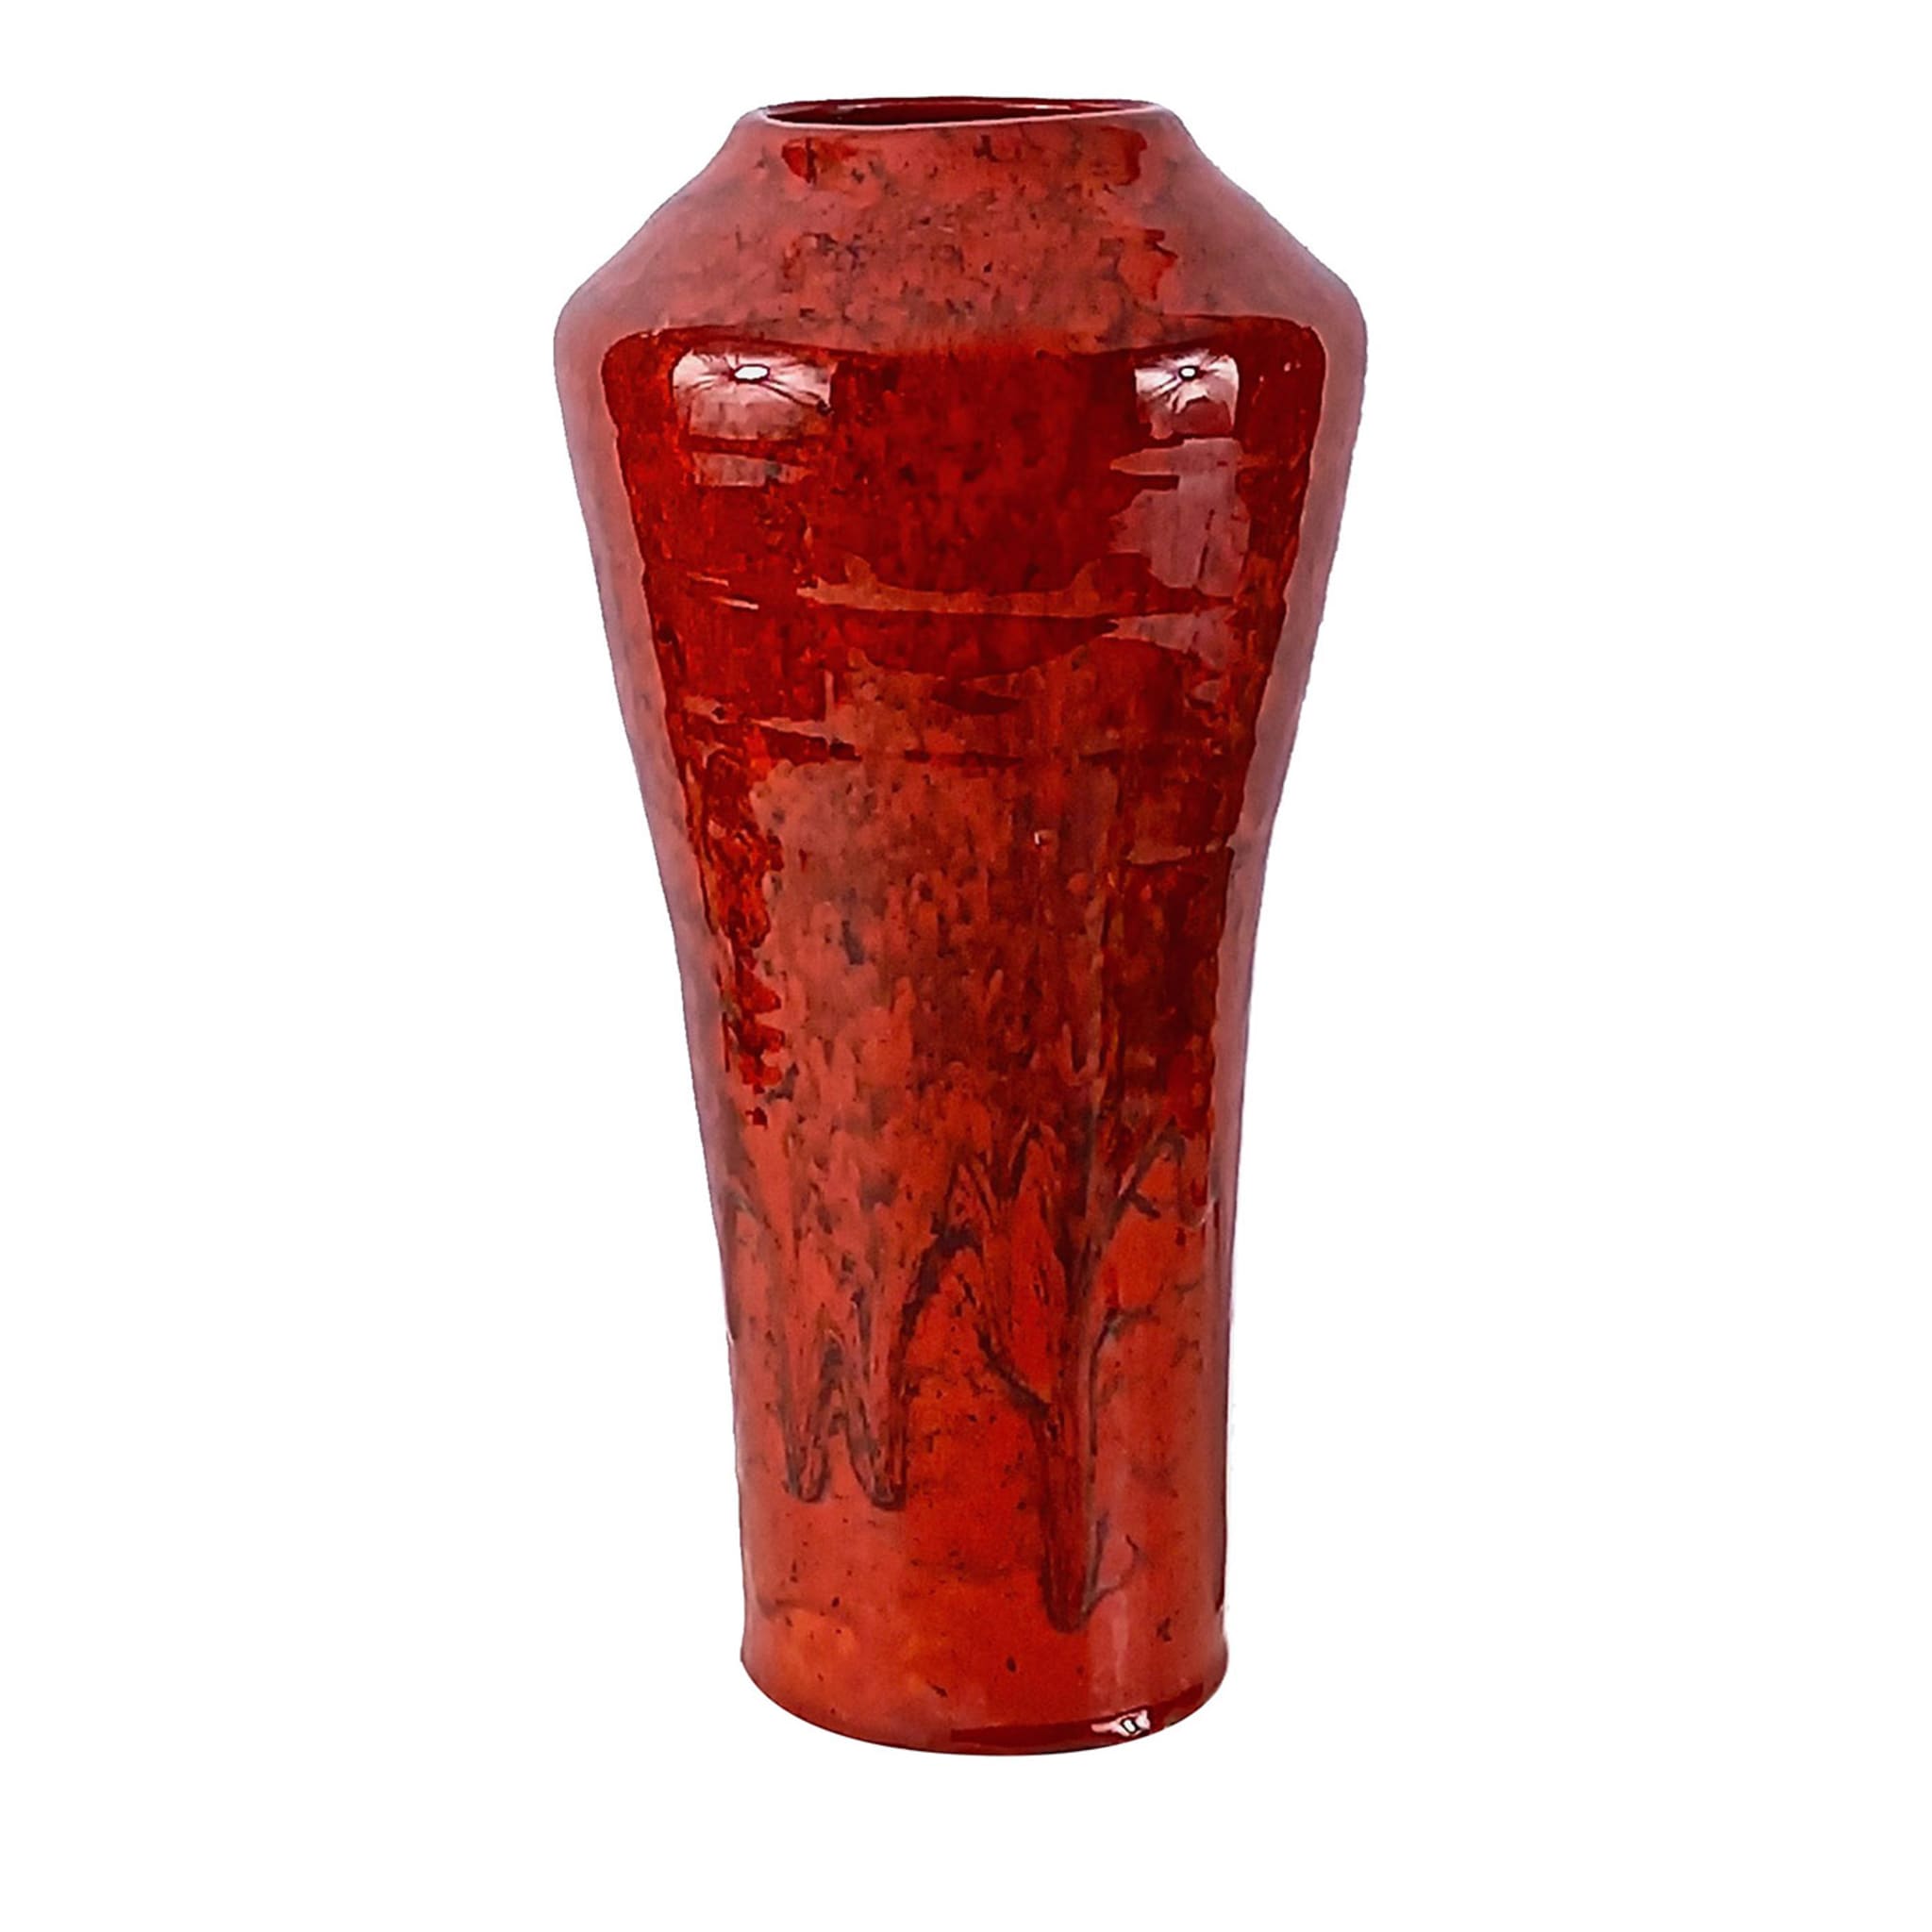 Gran Rosso Ceramic Vase #2  - Main view